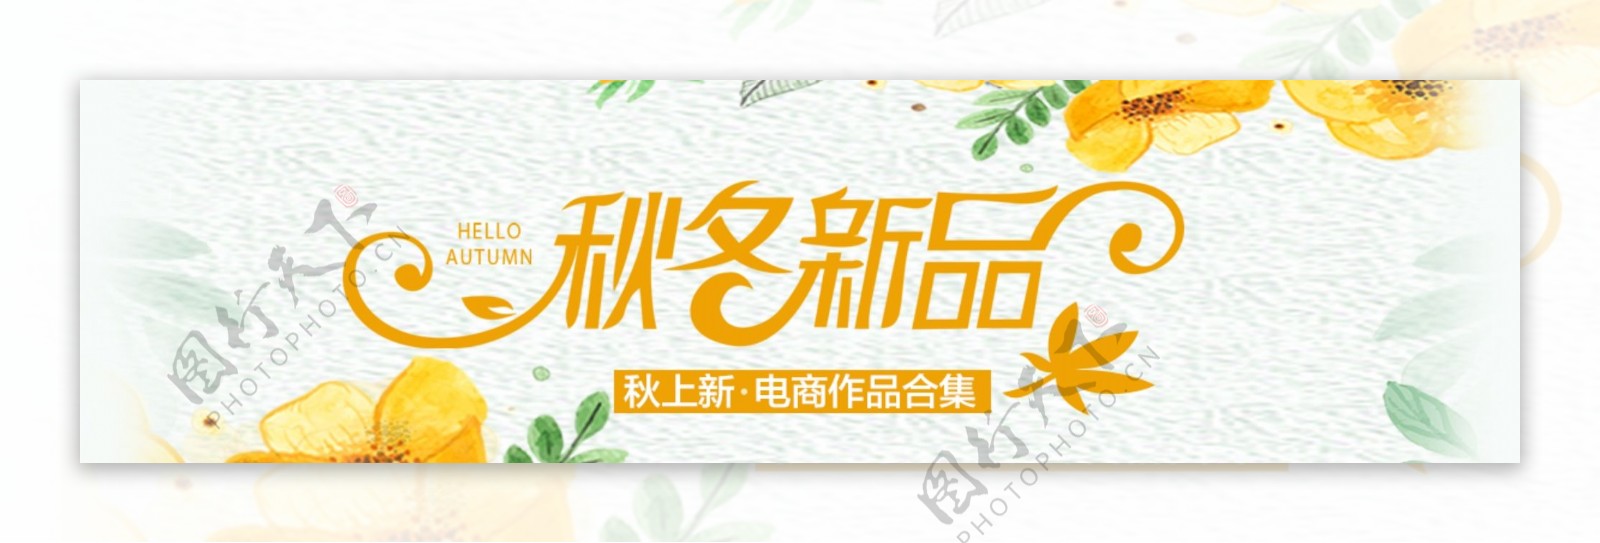 秋季上新banner促销商业海报设计